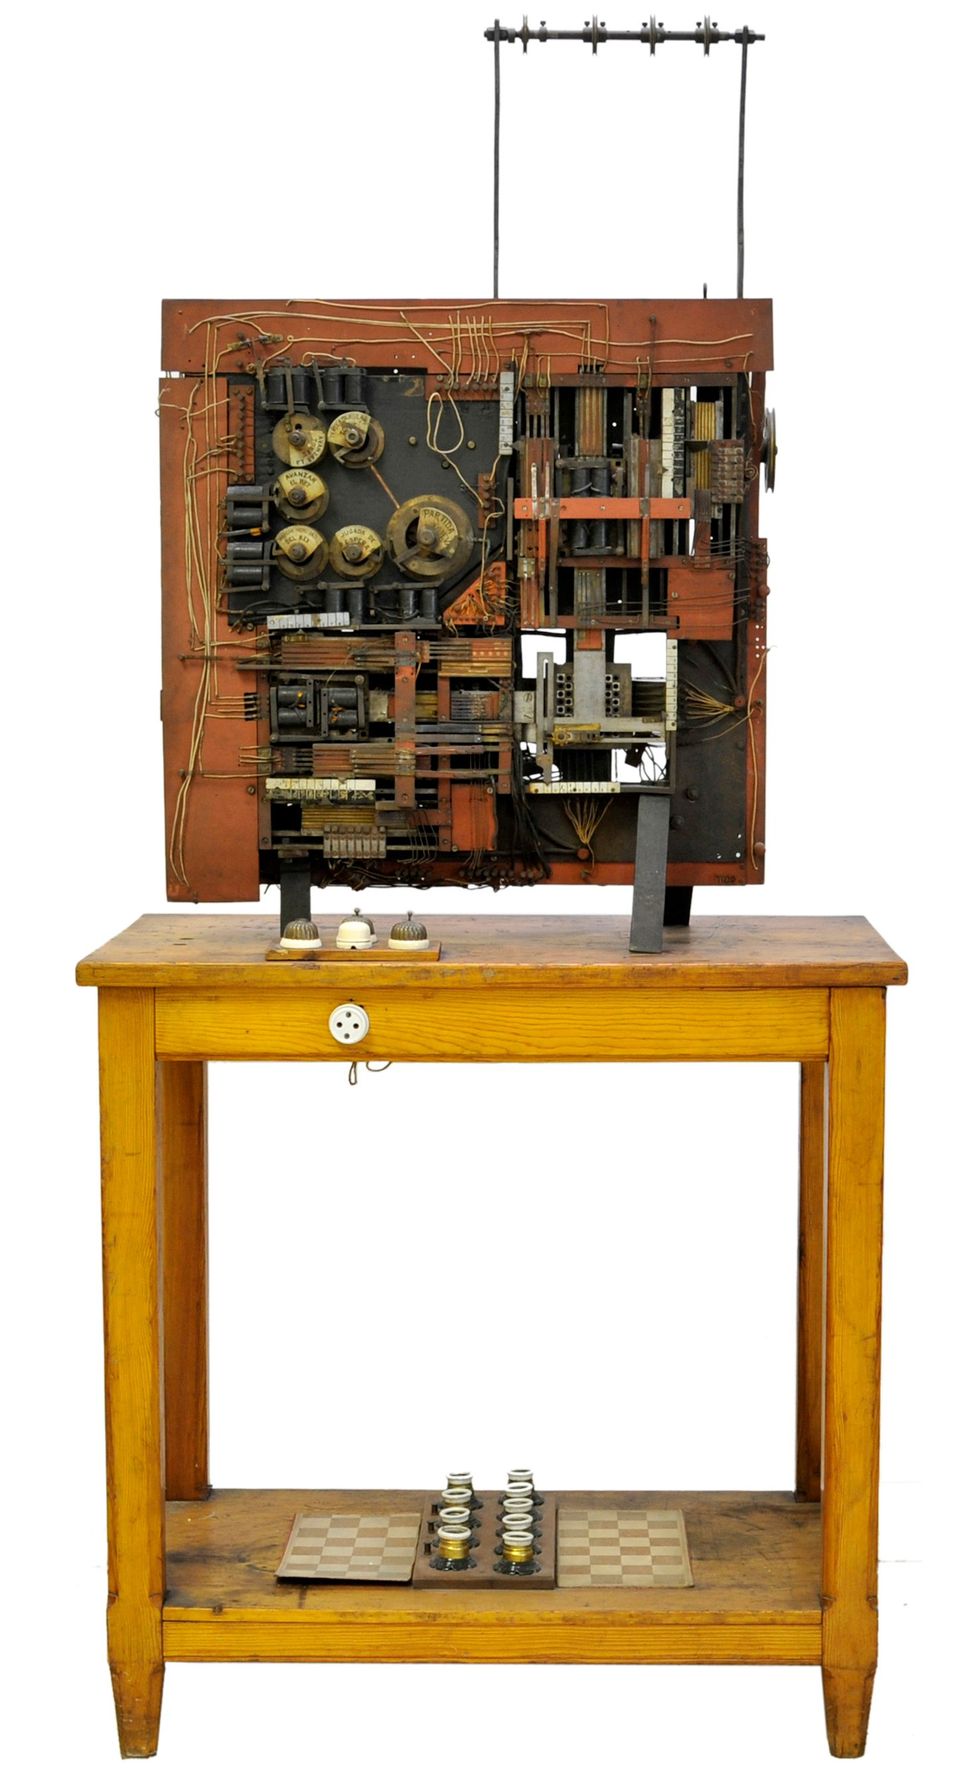 صورة لجهاز كهروميكانيكي جالس على طاولة خشبية.